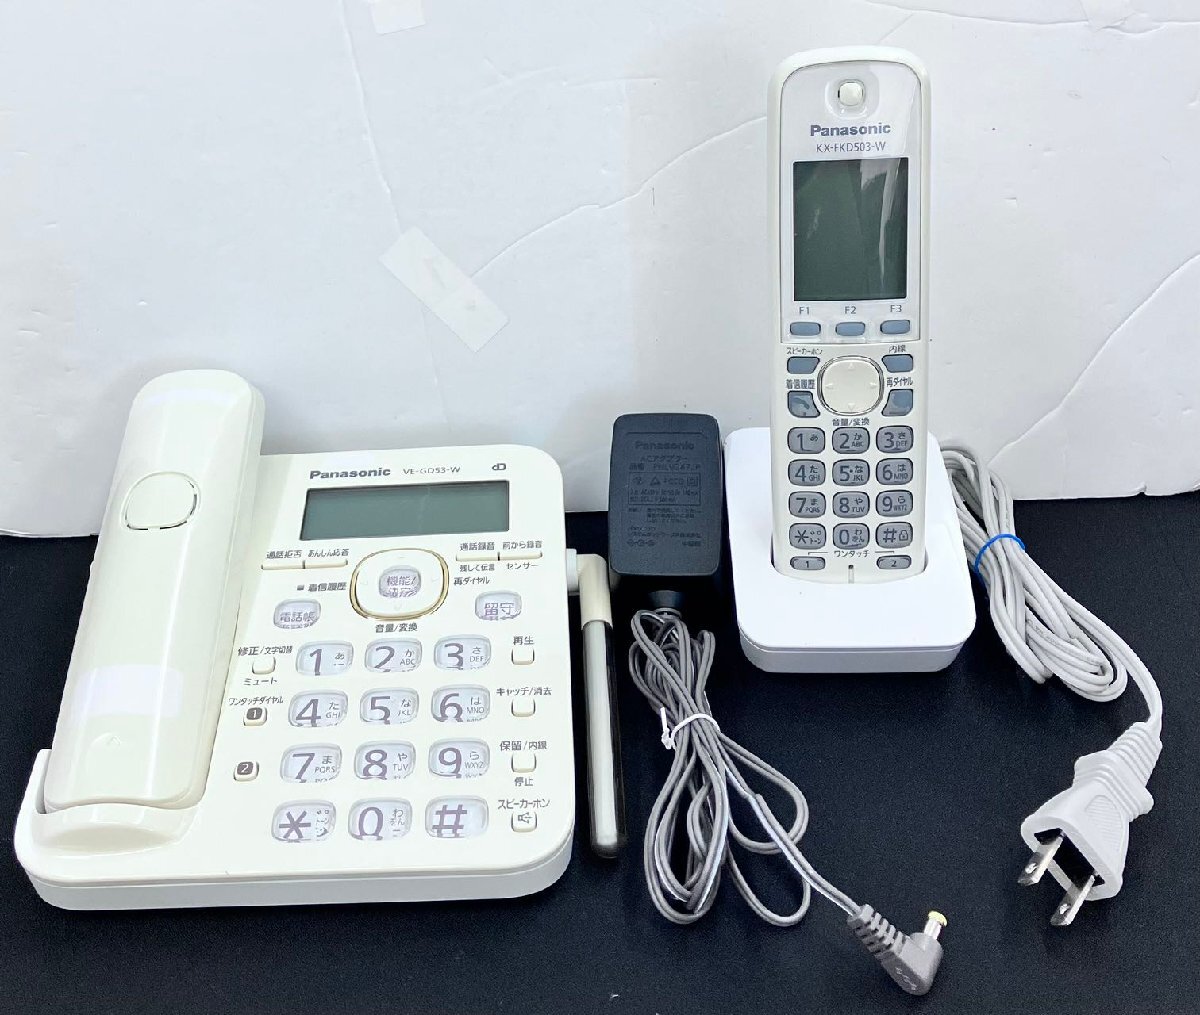 YM0205★中古品★Panasonicパナソニック コードレス電話機VE-GD53DLシリーズ 親機(VE-GD53-W) +子機(KX-FKD503-W)セット 動作確認済み_画像1